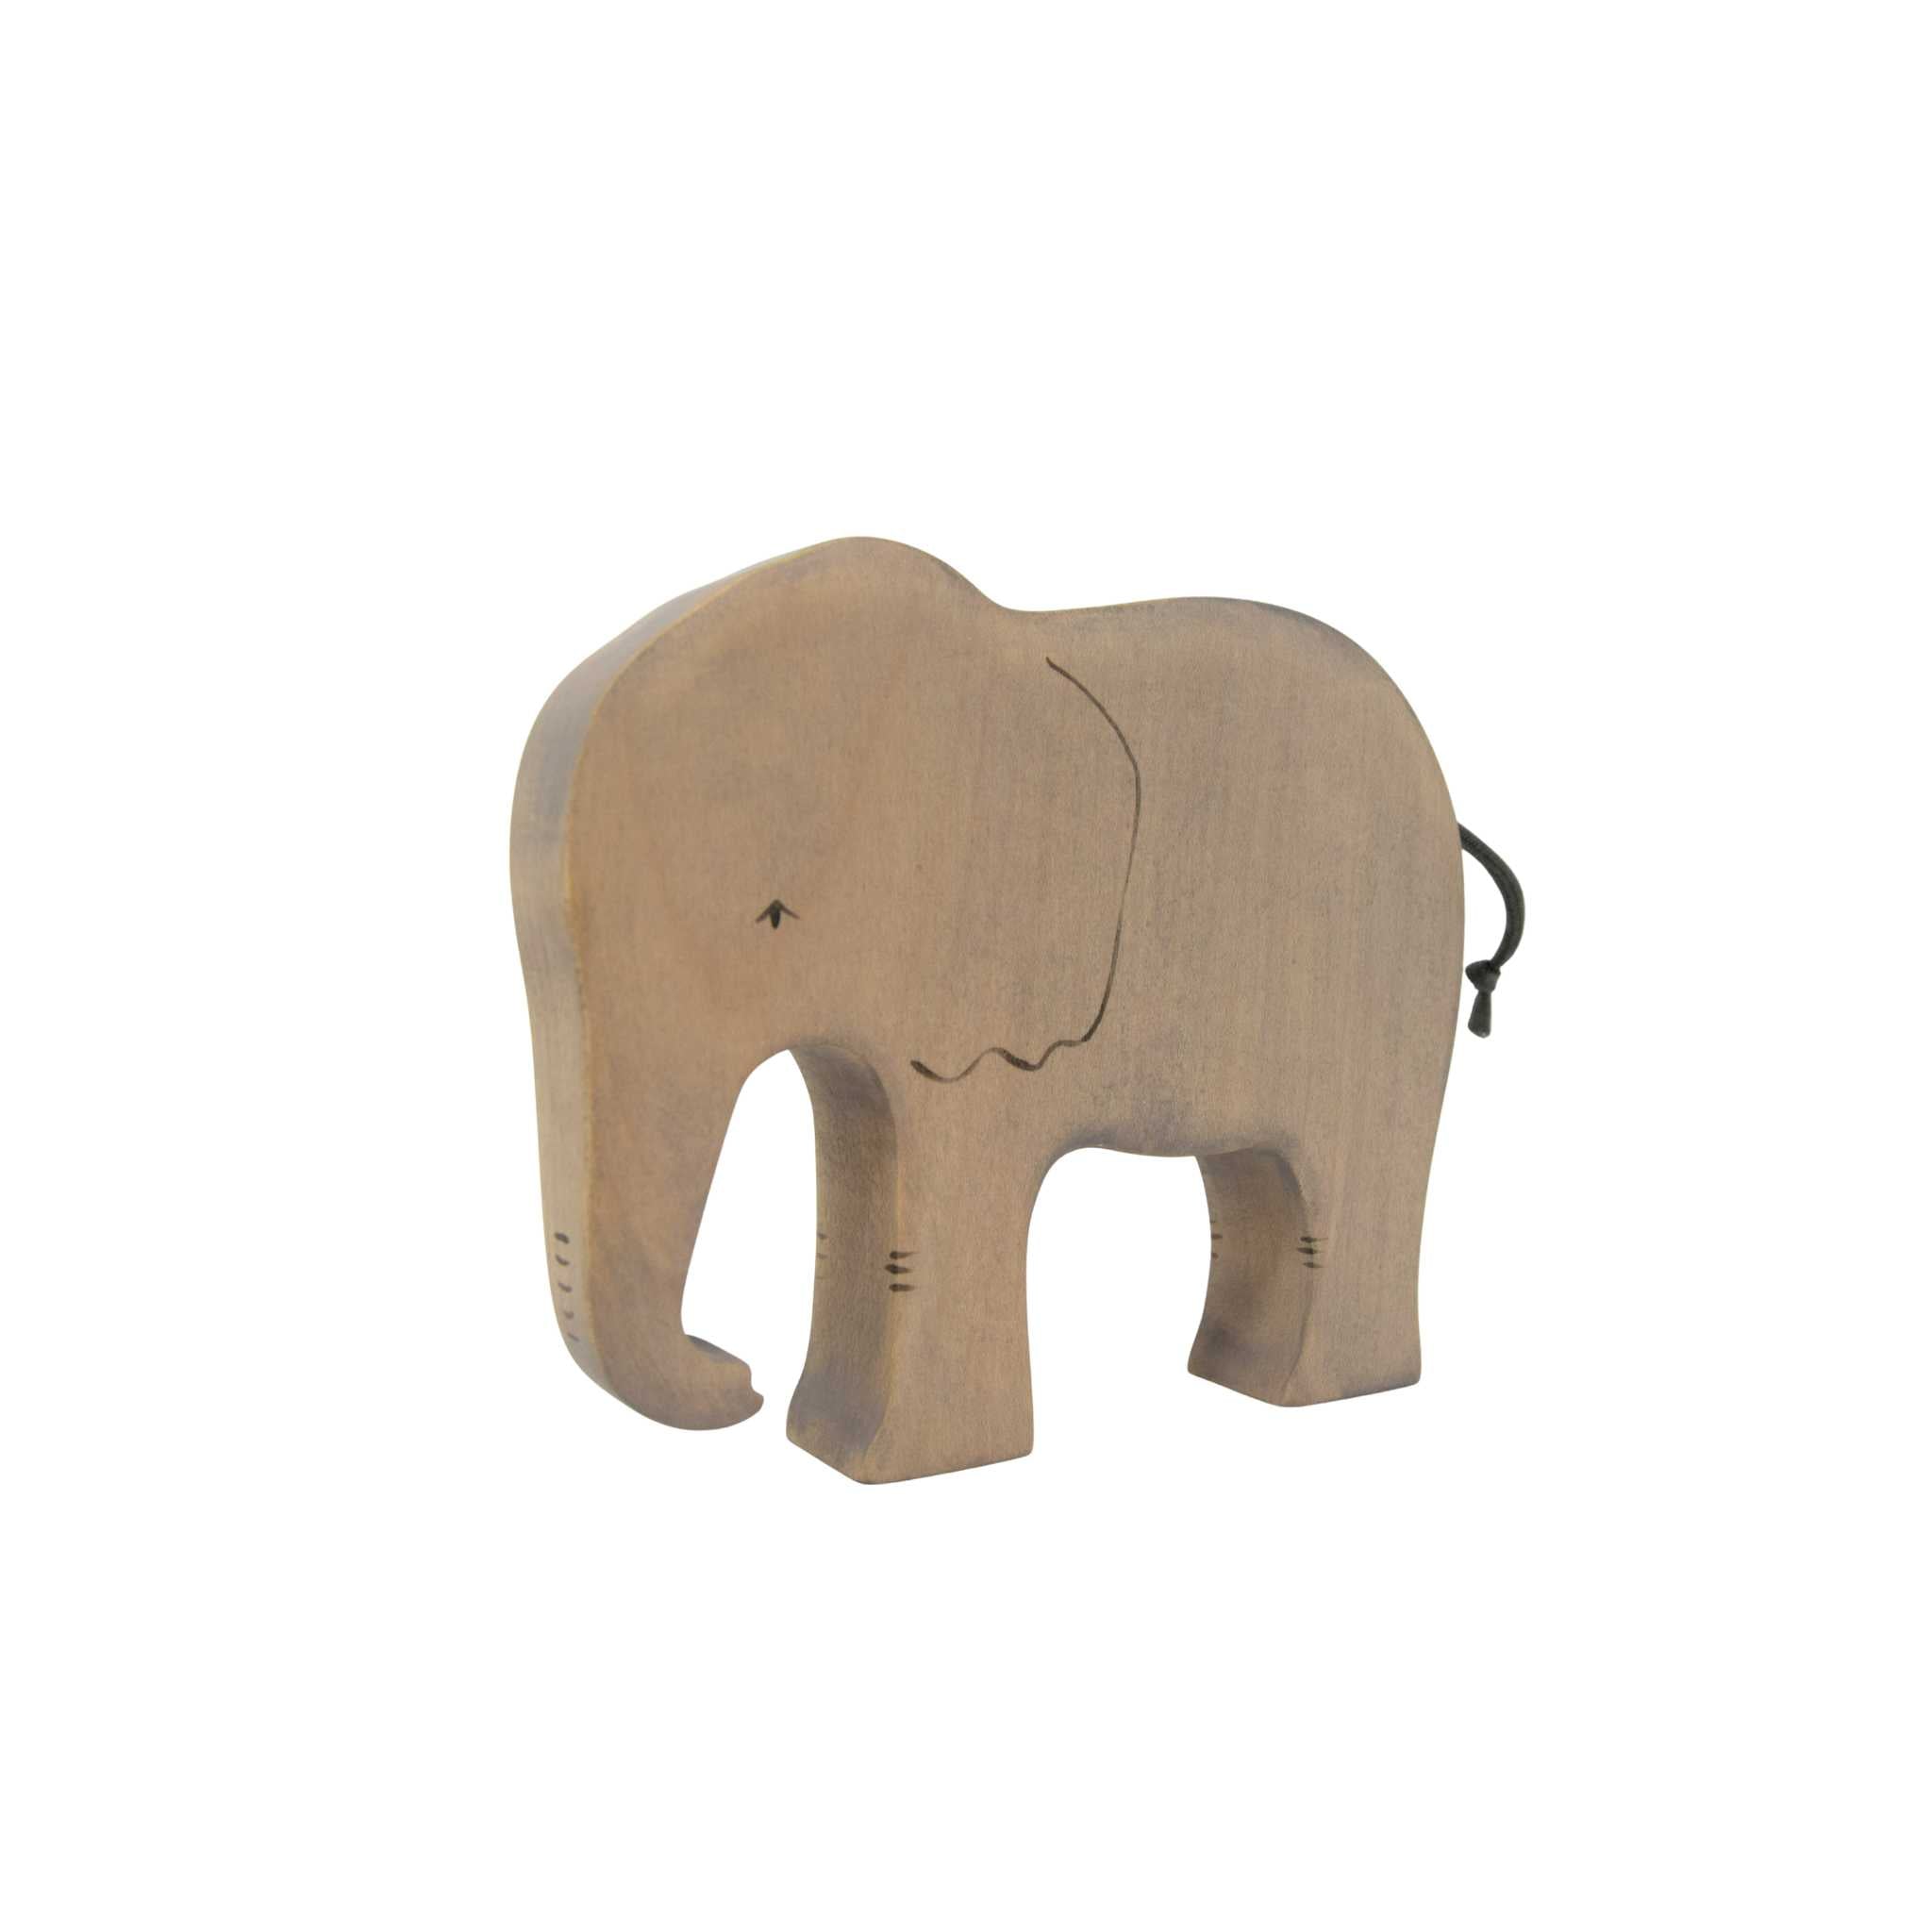 Eric & Albert Wooden Elephant Toy